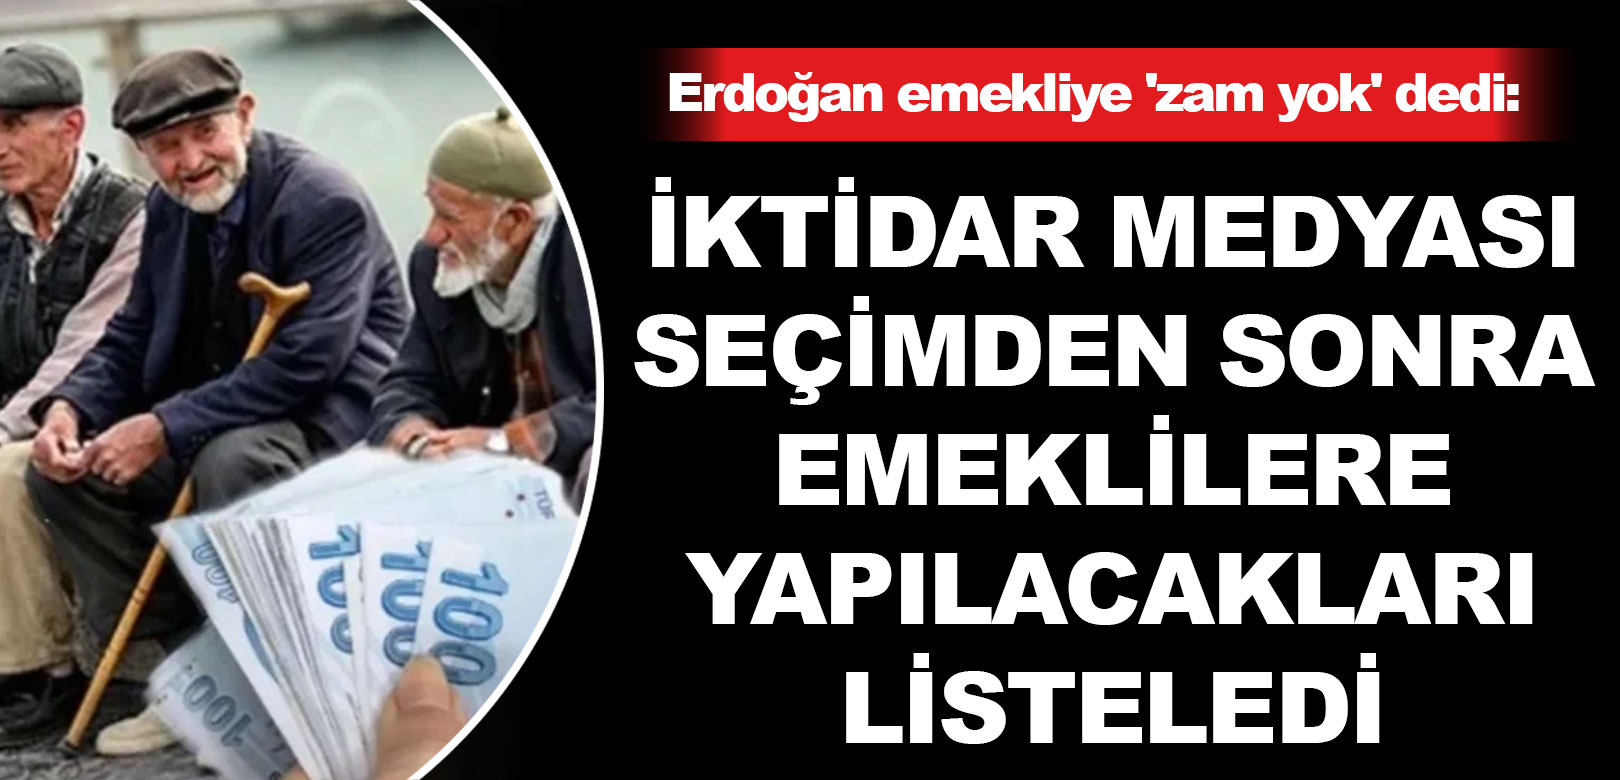 Erdoğan emekliye 'zam yok' dedi: İktidar medyası seçimden sonra emeklilere yapılacakları listeledi